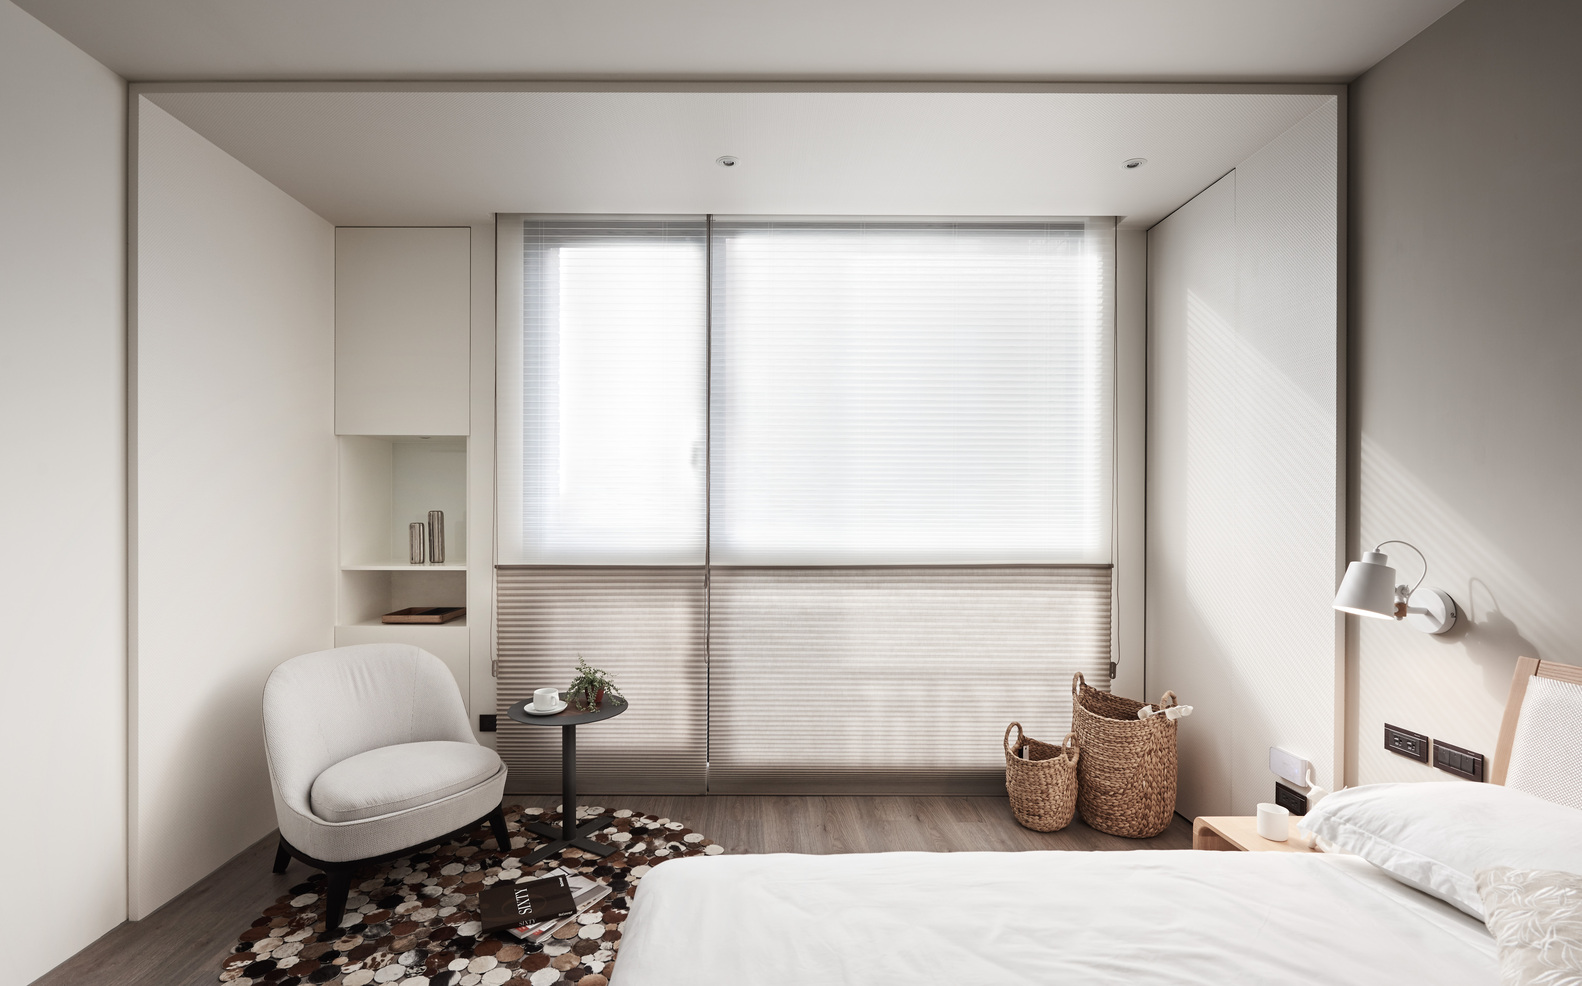 次卧以无主灯的设计方式打造，白色的卧室空间更具个性化和温馨感。